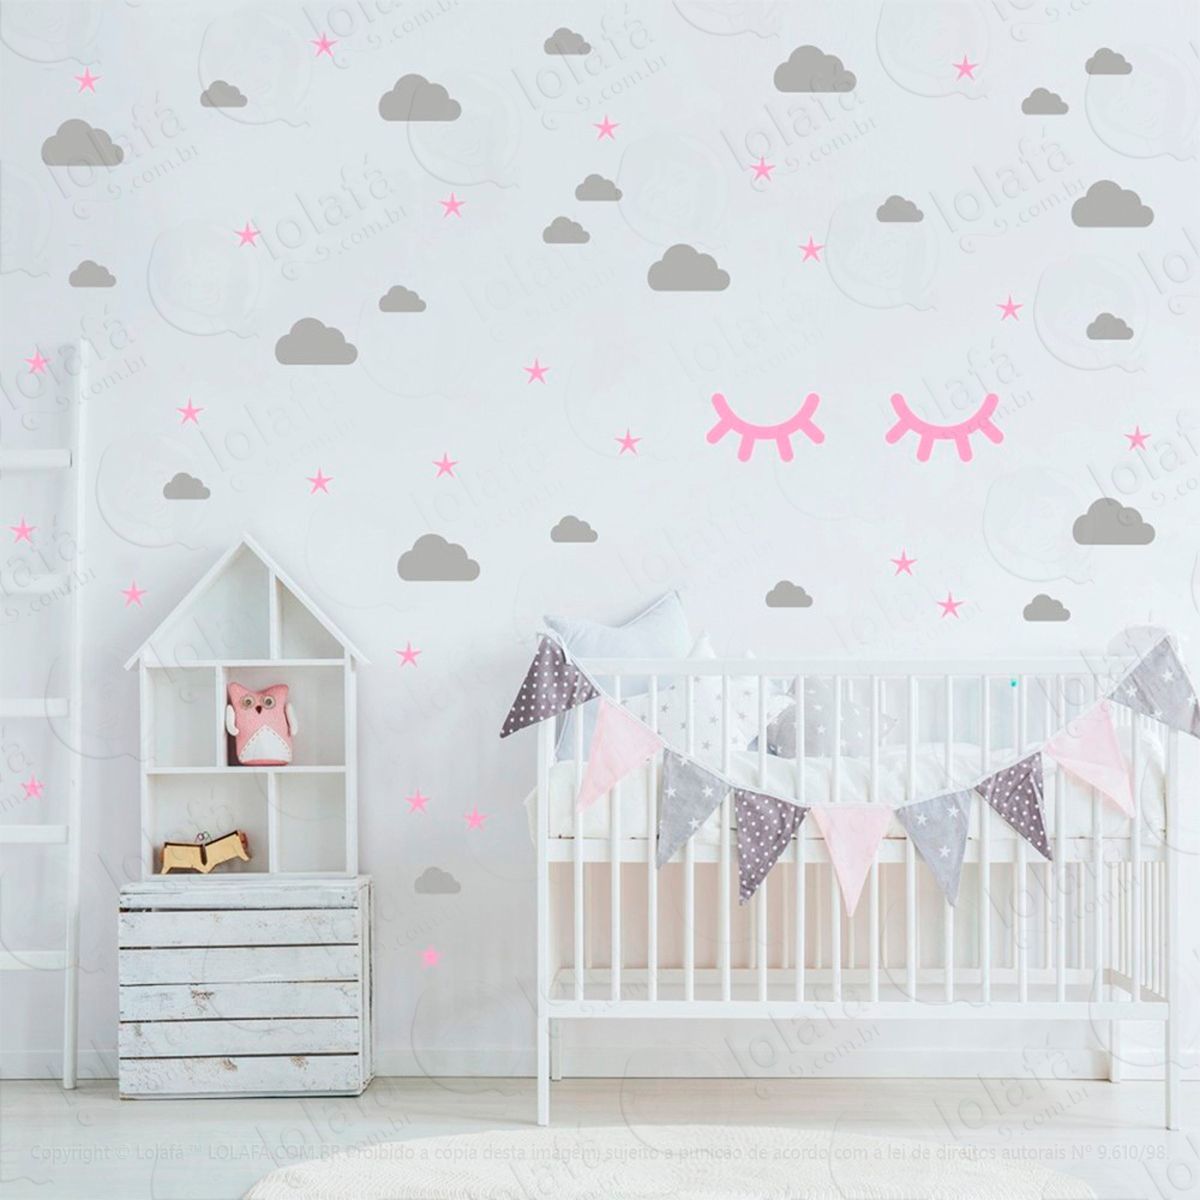 adesivos nuvens cílios e estrelas 76 peças adesivos para quarto de bebê infantil - mod:99